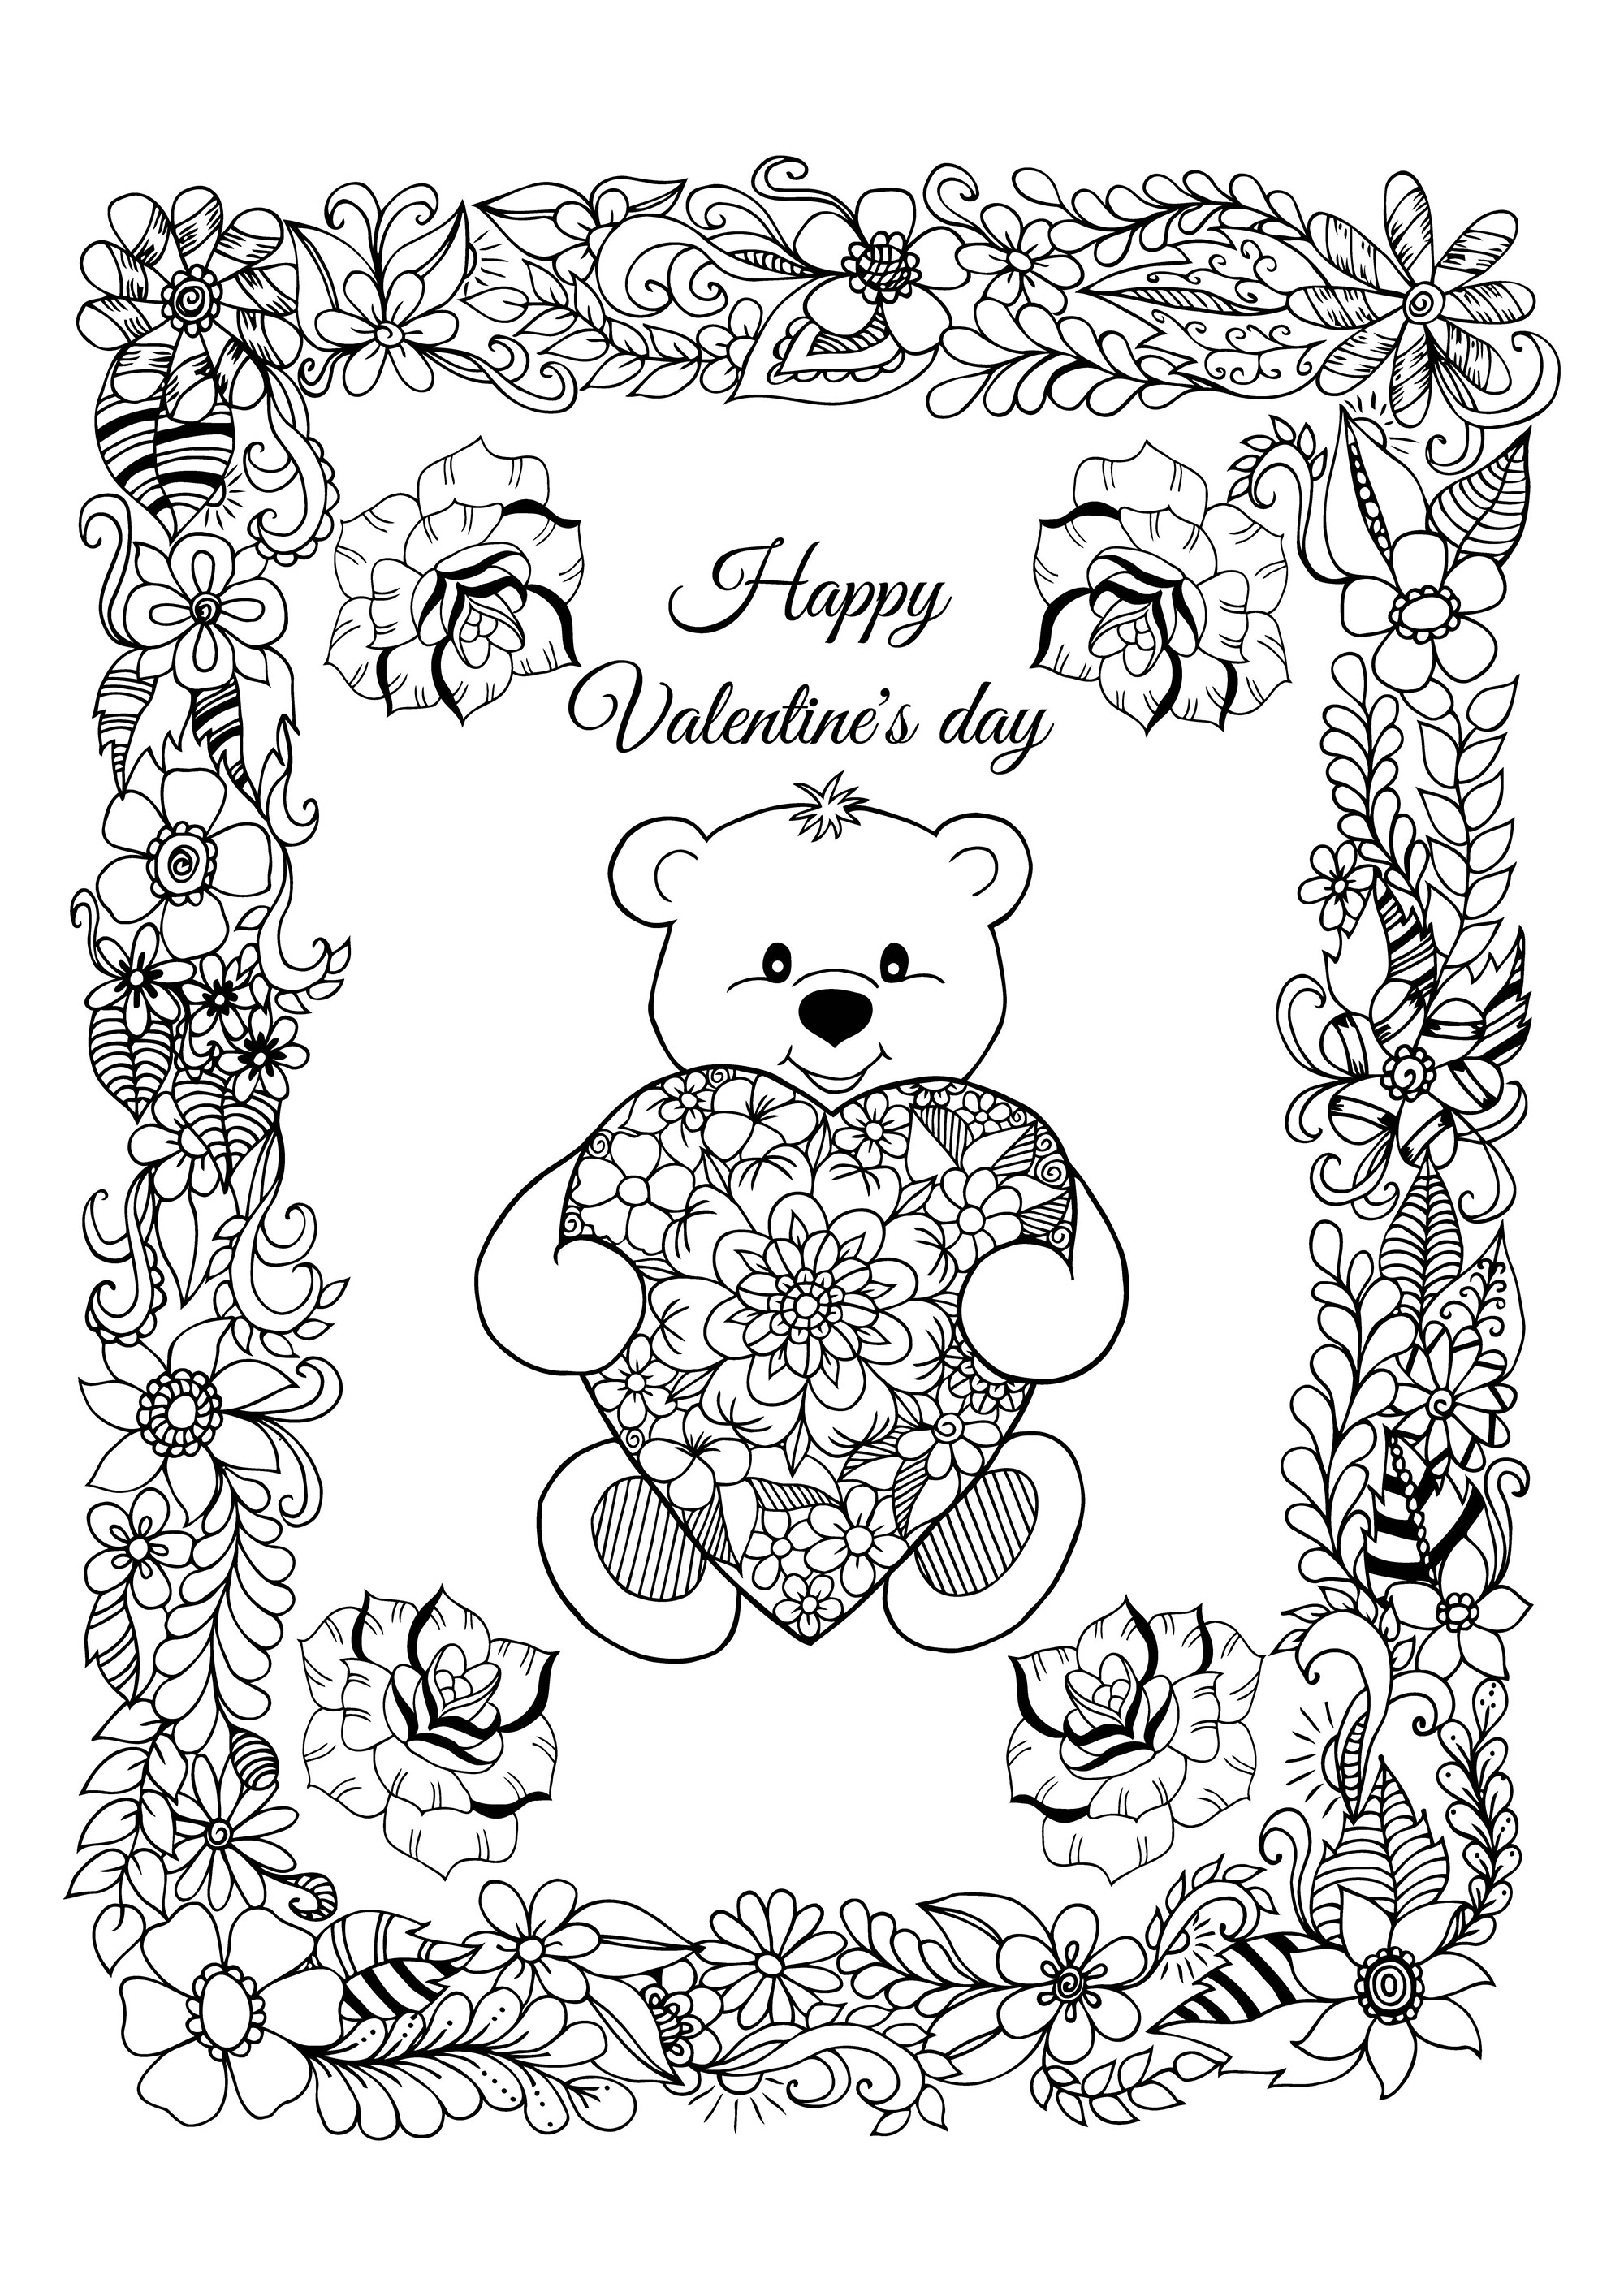 Hübsche Valentinstagskarte zum Ausmalen, mit einem süßen Bären, der ein Herz mit hübschen Mustern trägt, und einem hübschen Rahmen voller Blumen, Künstler : Maritel67   Quelle : 123rf